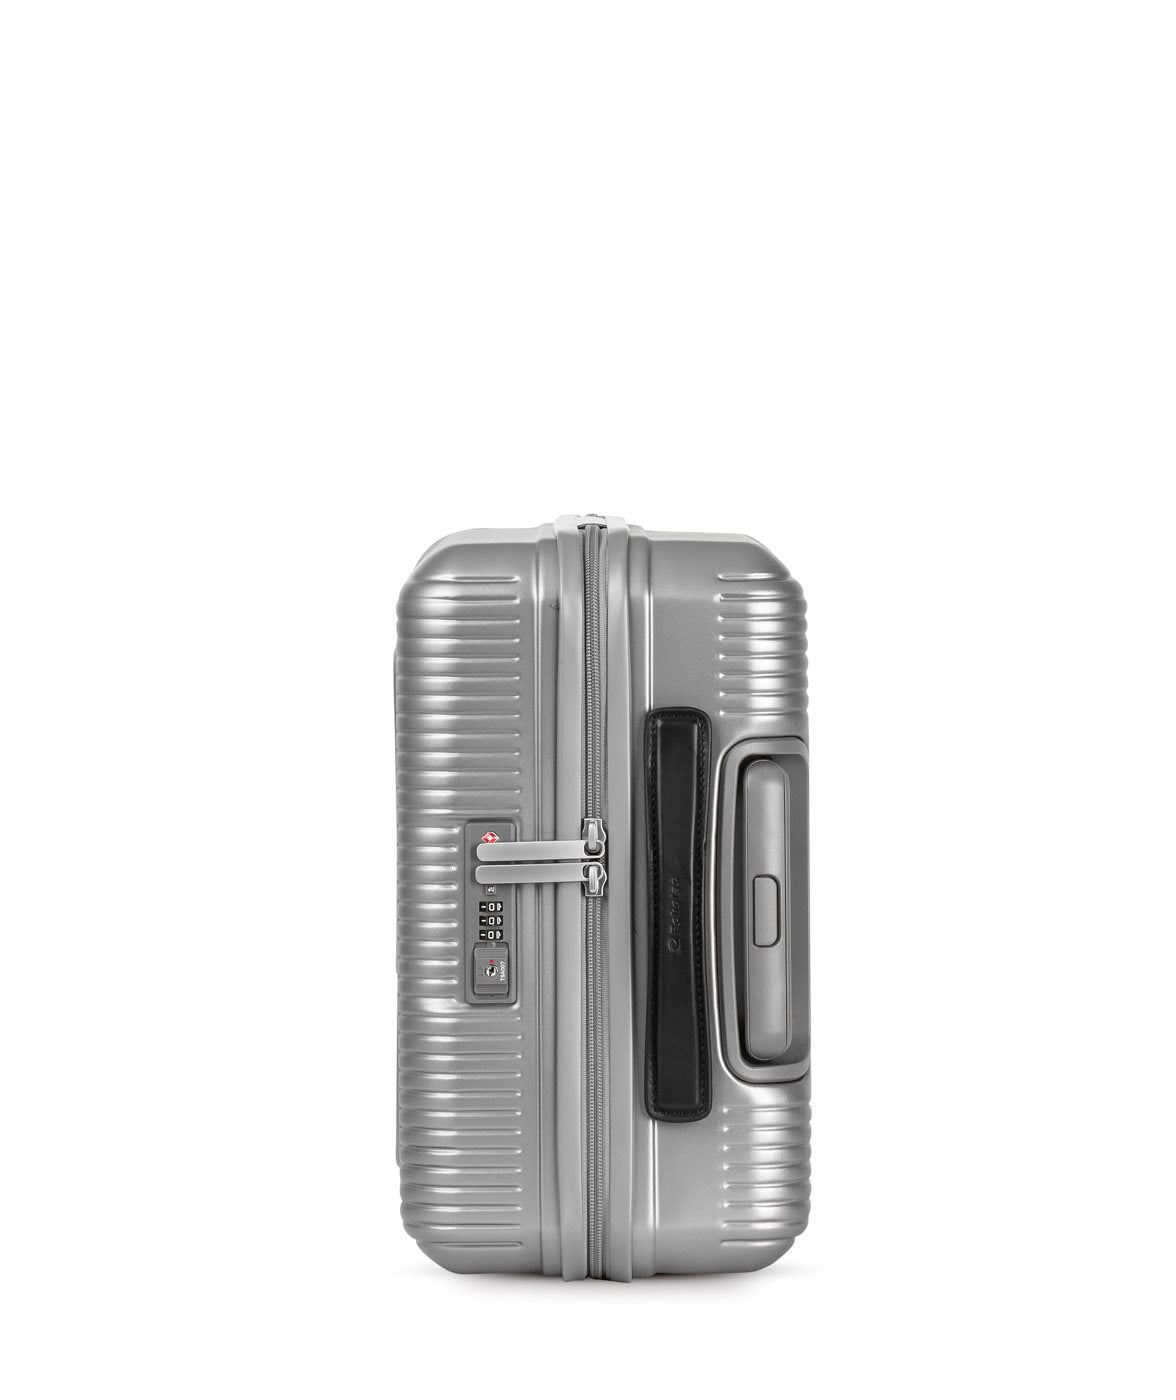 Echolac Knight handbagage koffer - S - Silver Handbagage Koffer - Reisartikelen-nl